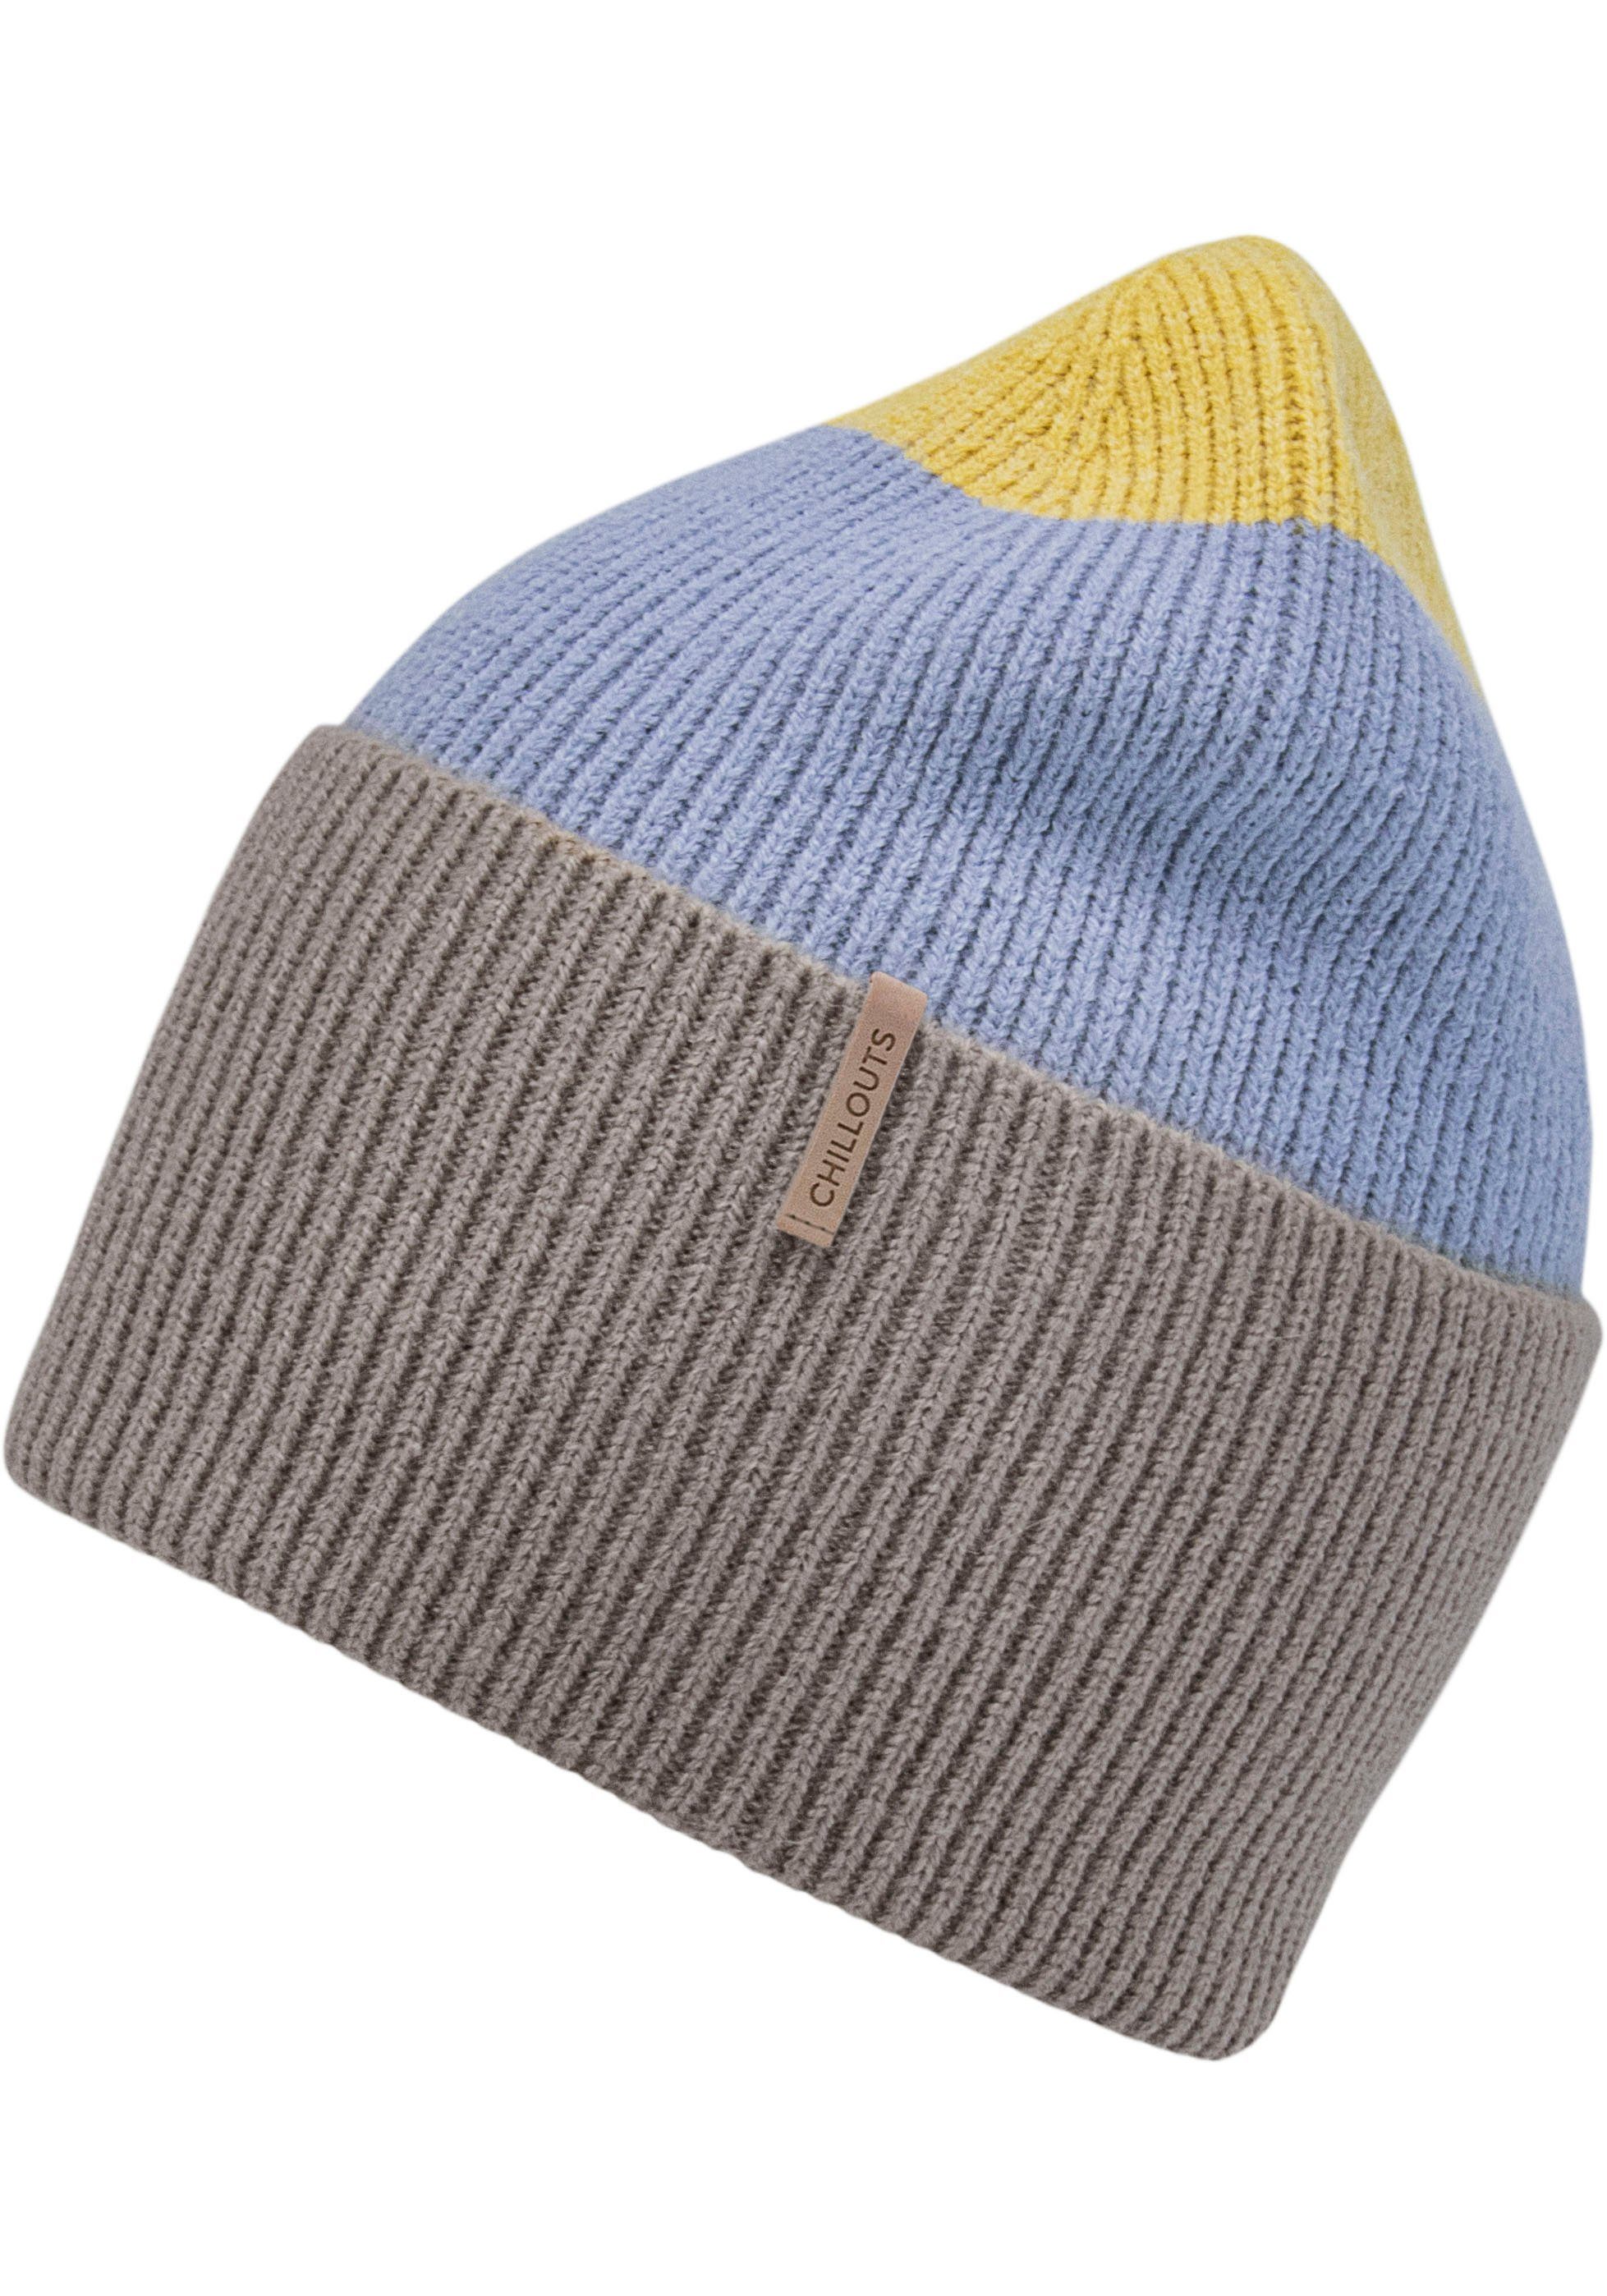 chillouts Strickmütze Tamy Hat Rippenstrick, Blockstreifen taupe blue